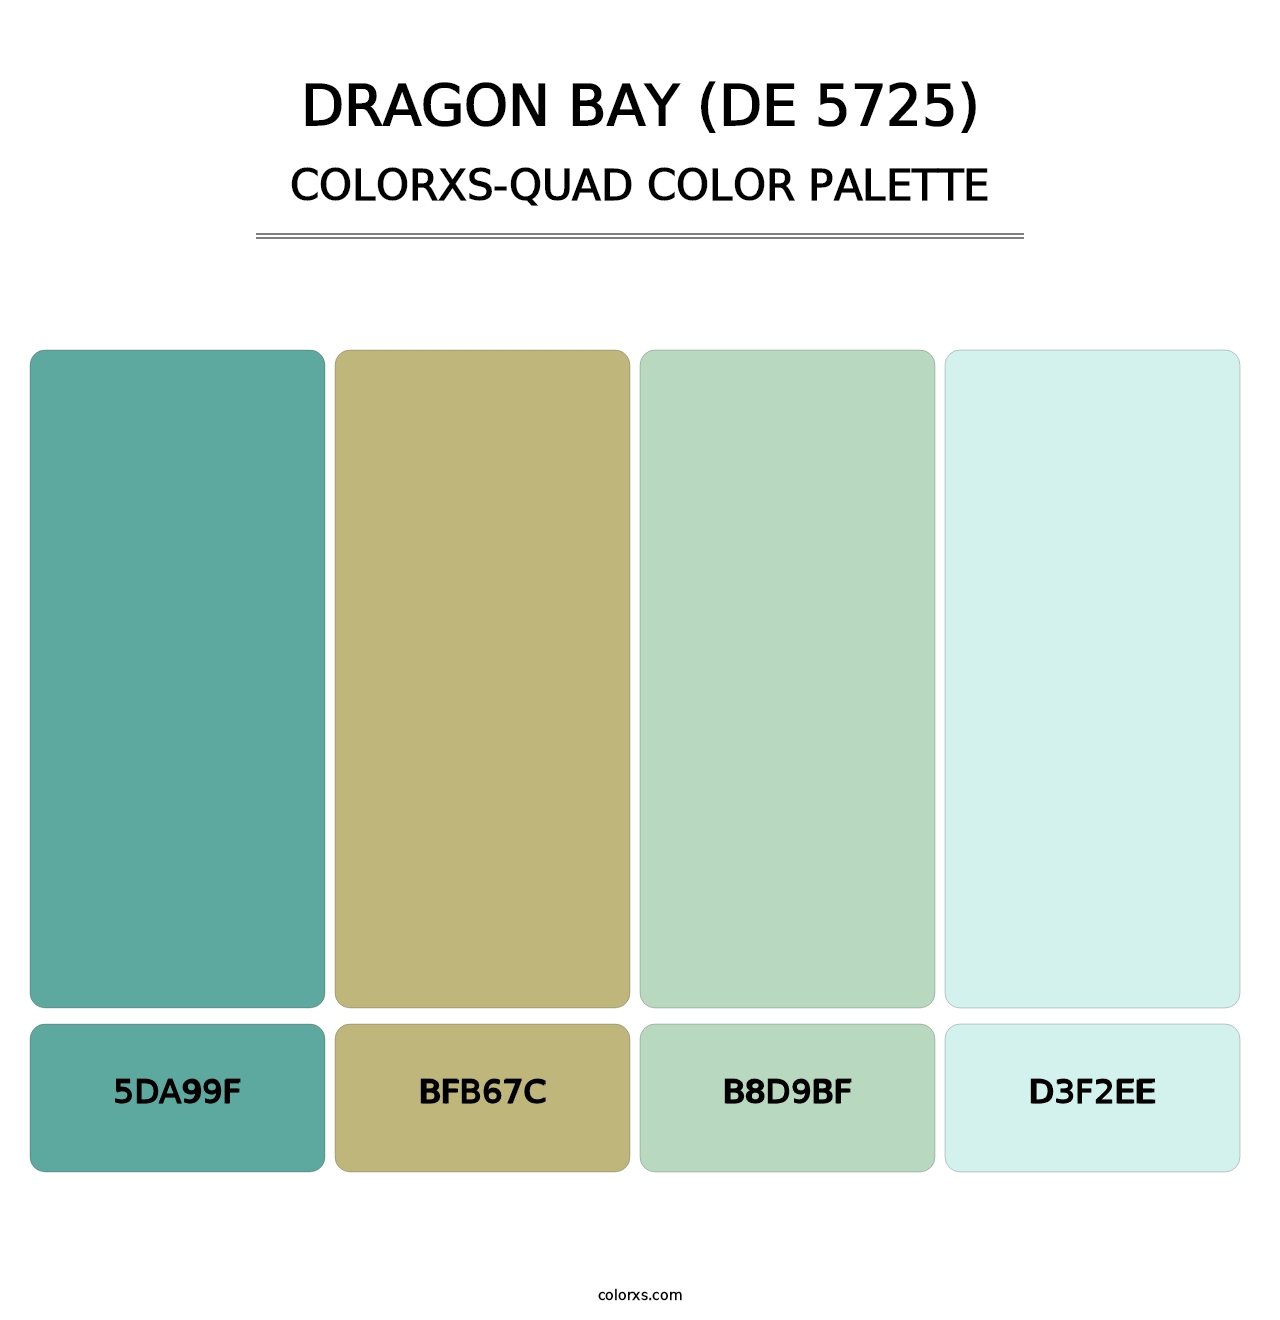 Dragon Bay (DE 5725) - Colorxs Quad Palette